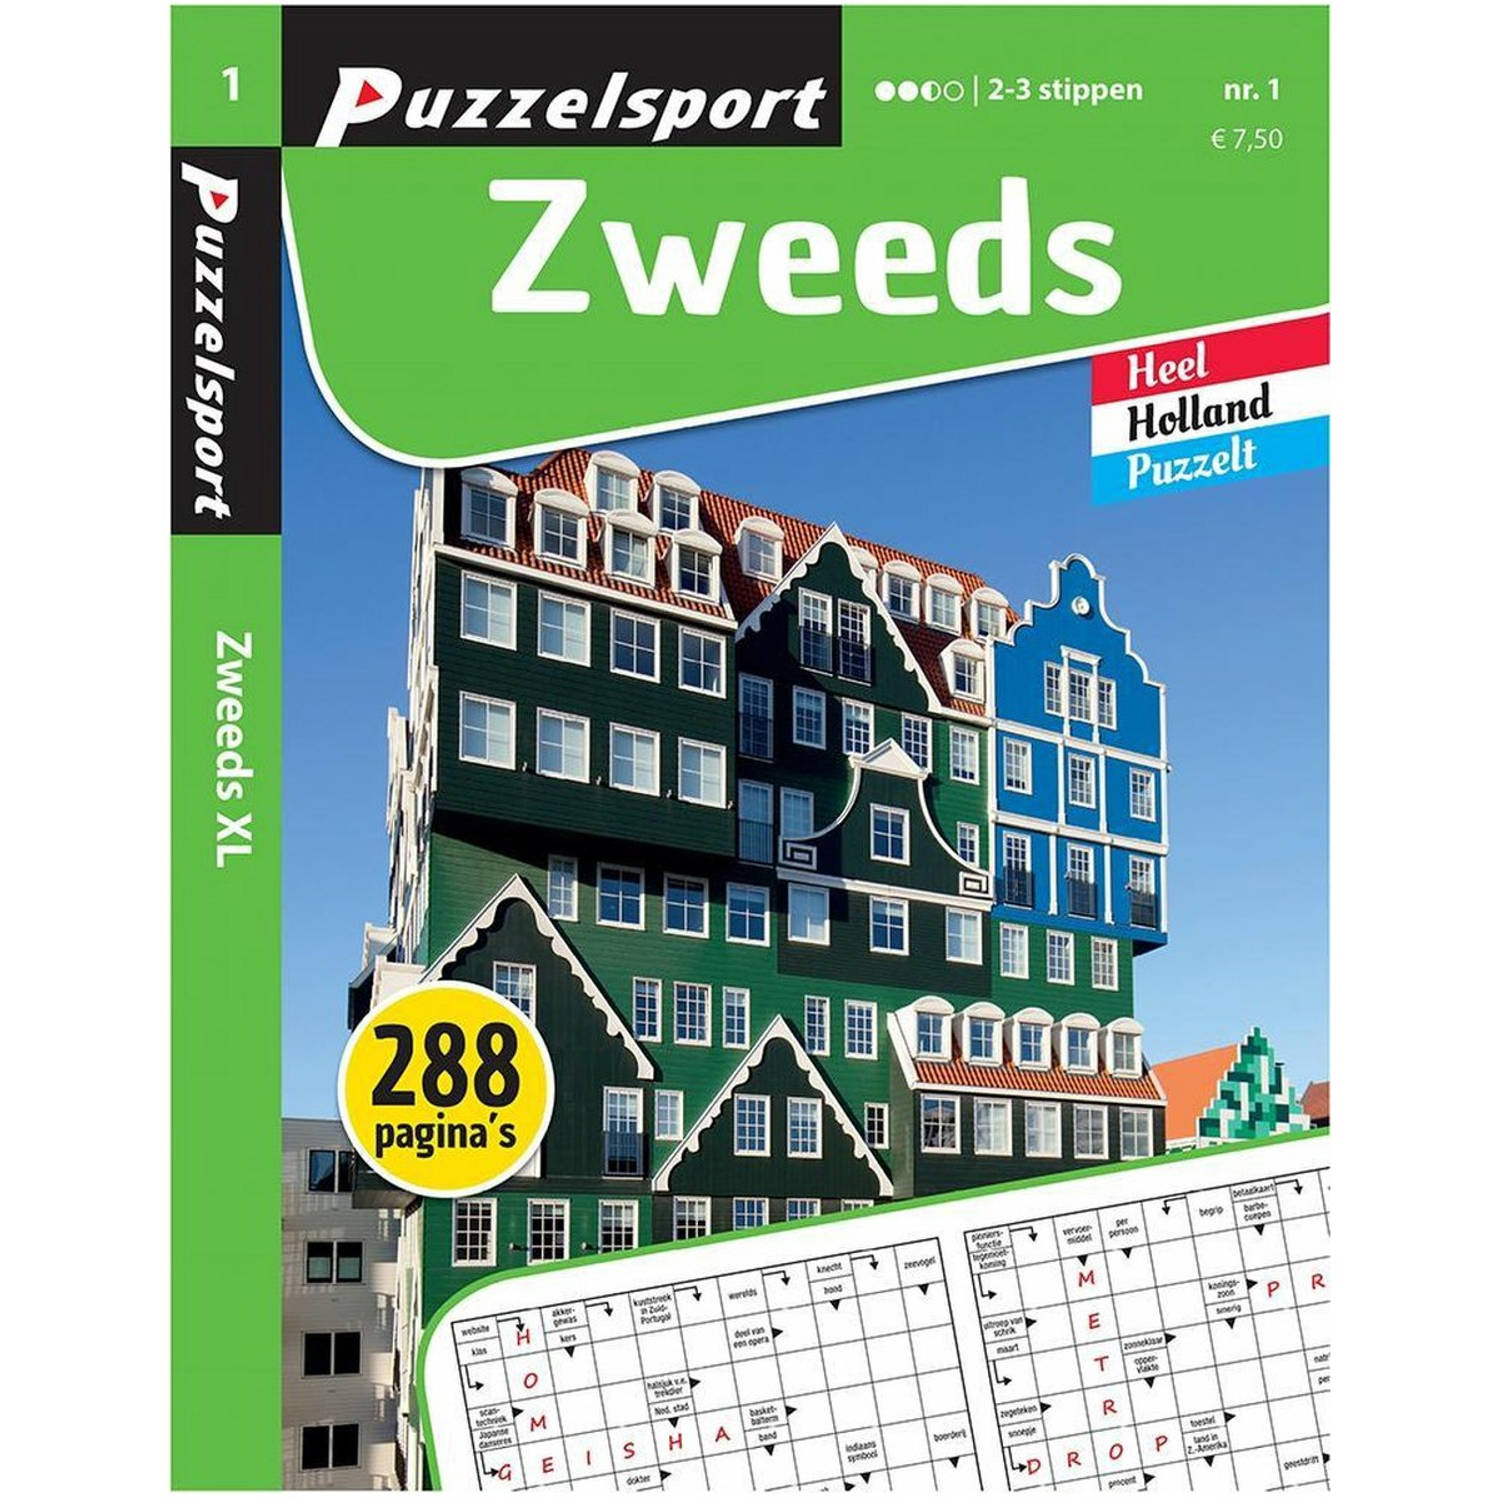 Puzzelsport Puzzelboek Zweeds 2-3* 288 pagina's Nr.1